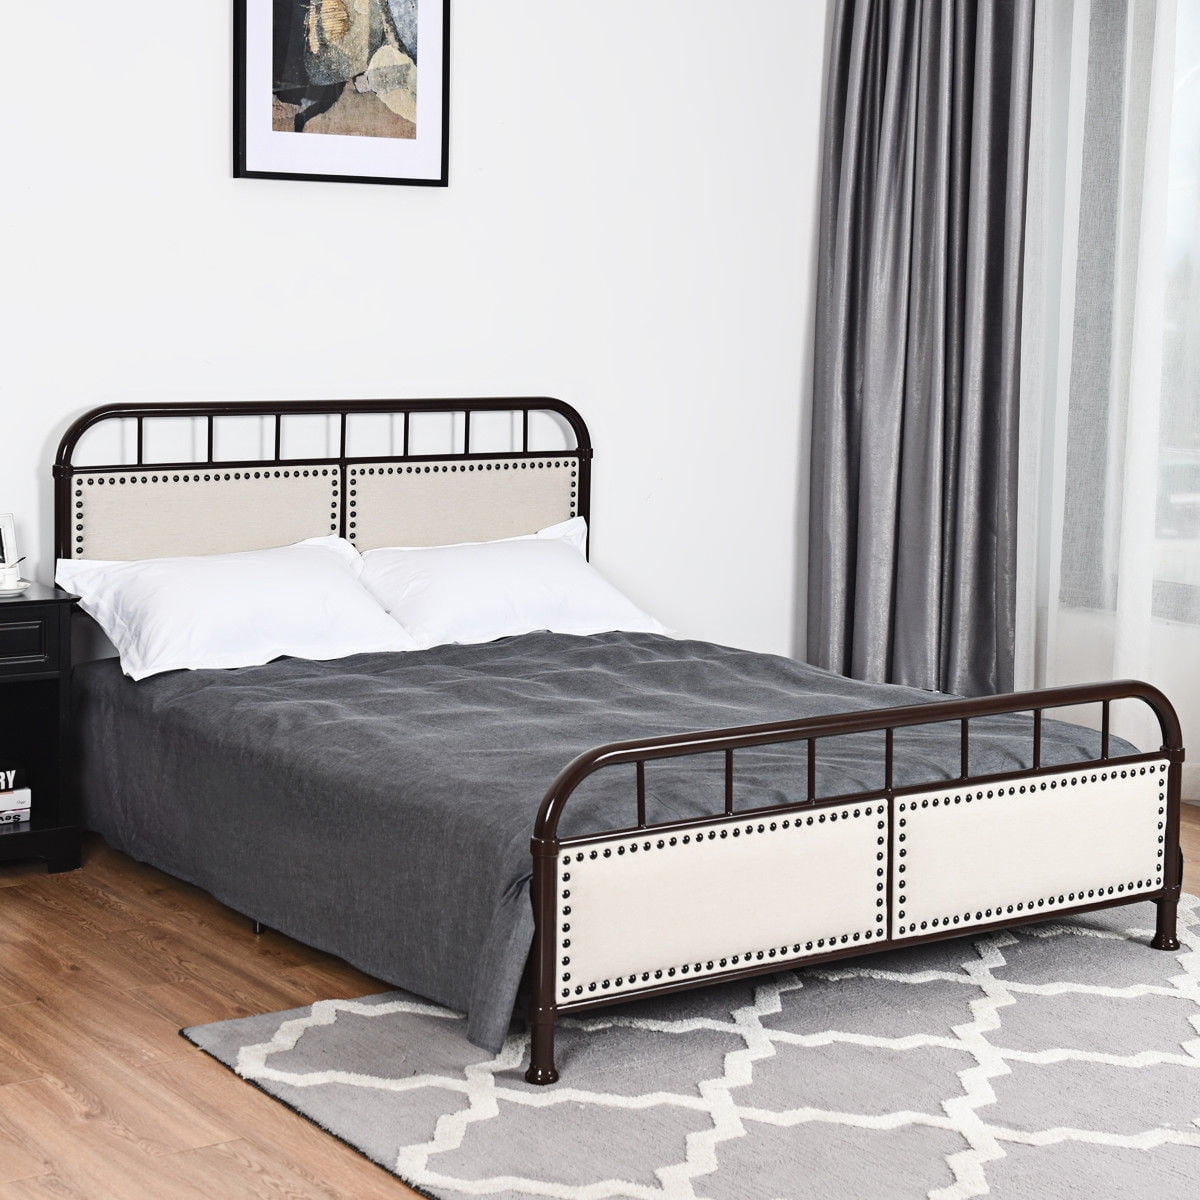 Queen size Metal Bed Frame Platform Bed Upholstered Panel - Walmart.com